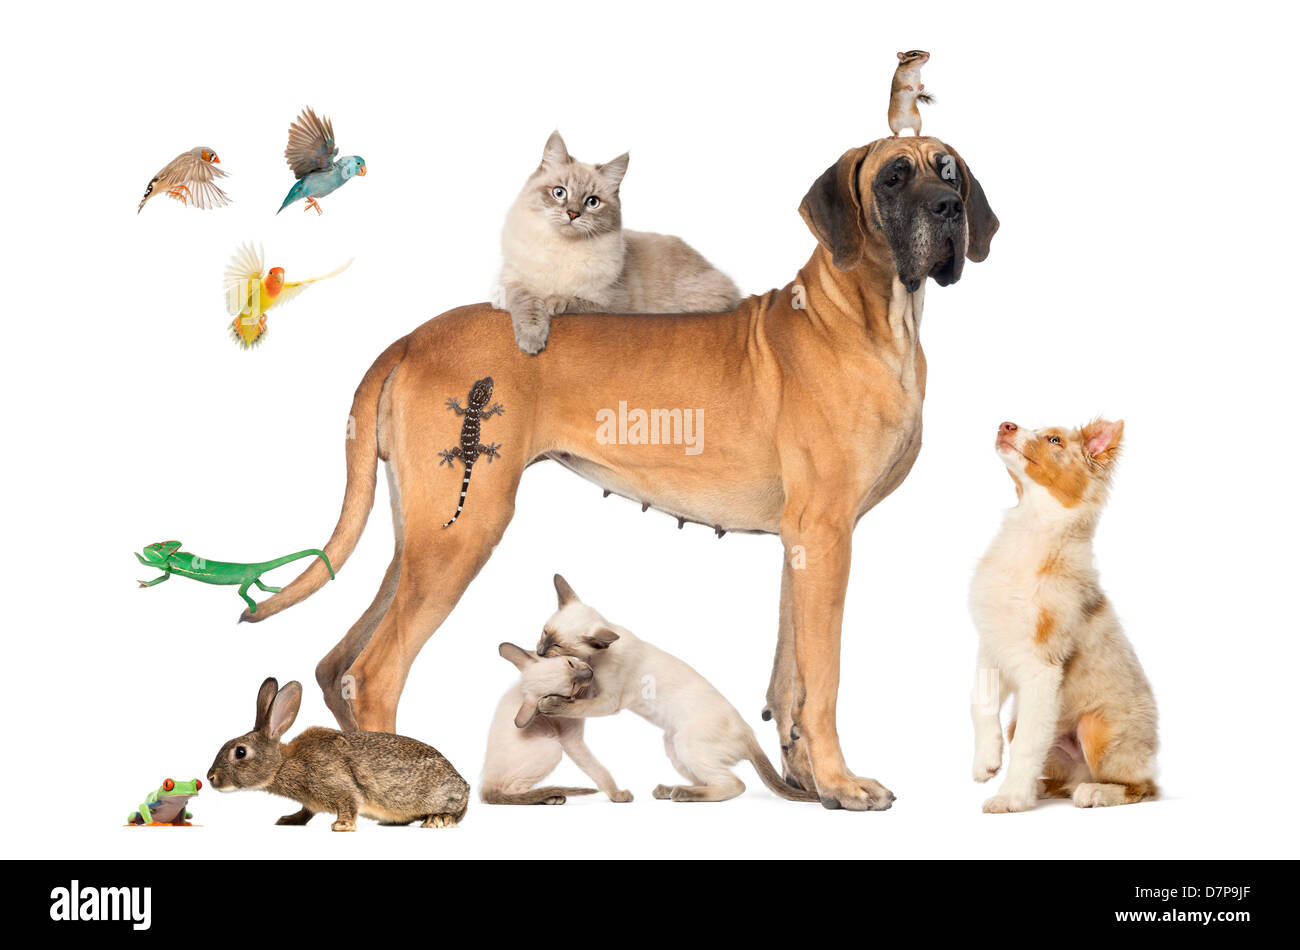 Groupe d'animaux y compris les chiens, chats, oiseaux, lézards et une souris contre fond blanc Banque D'Images